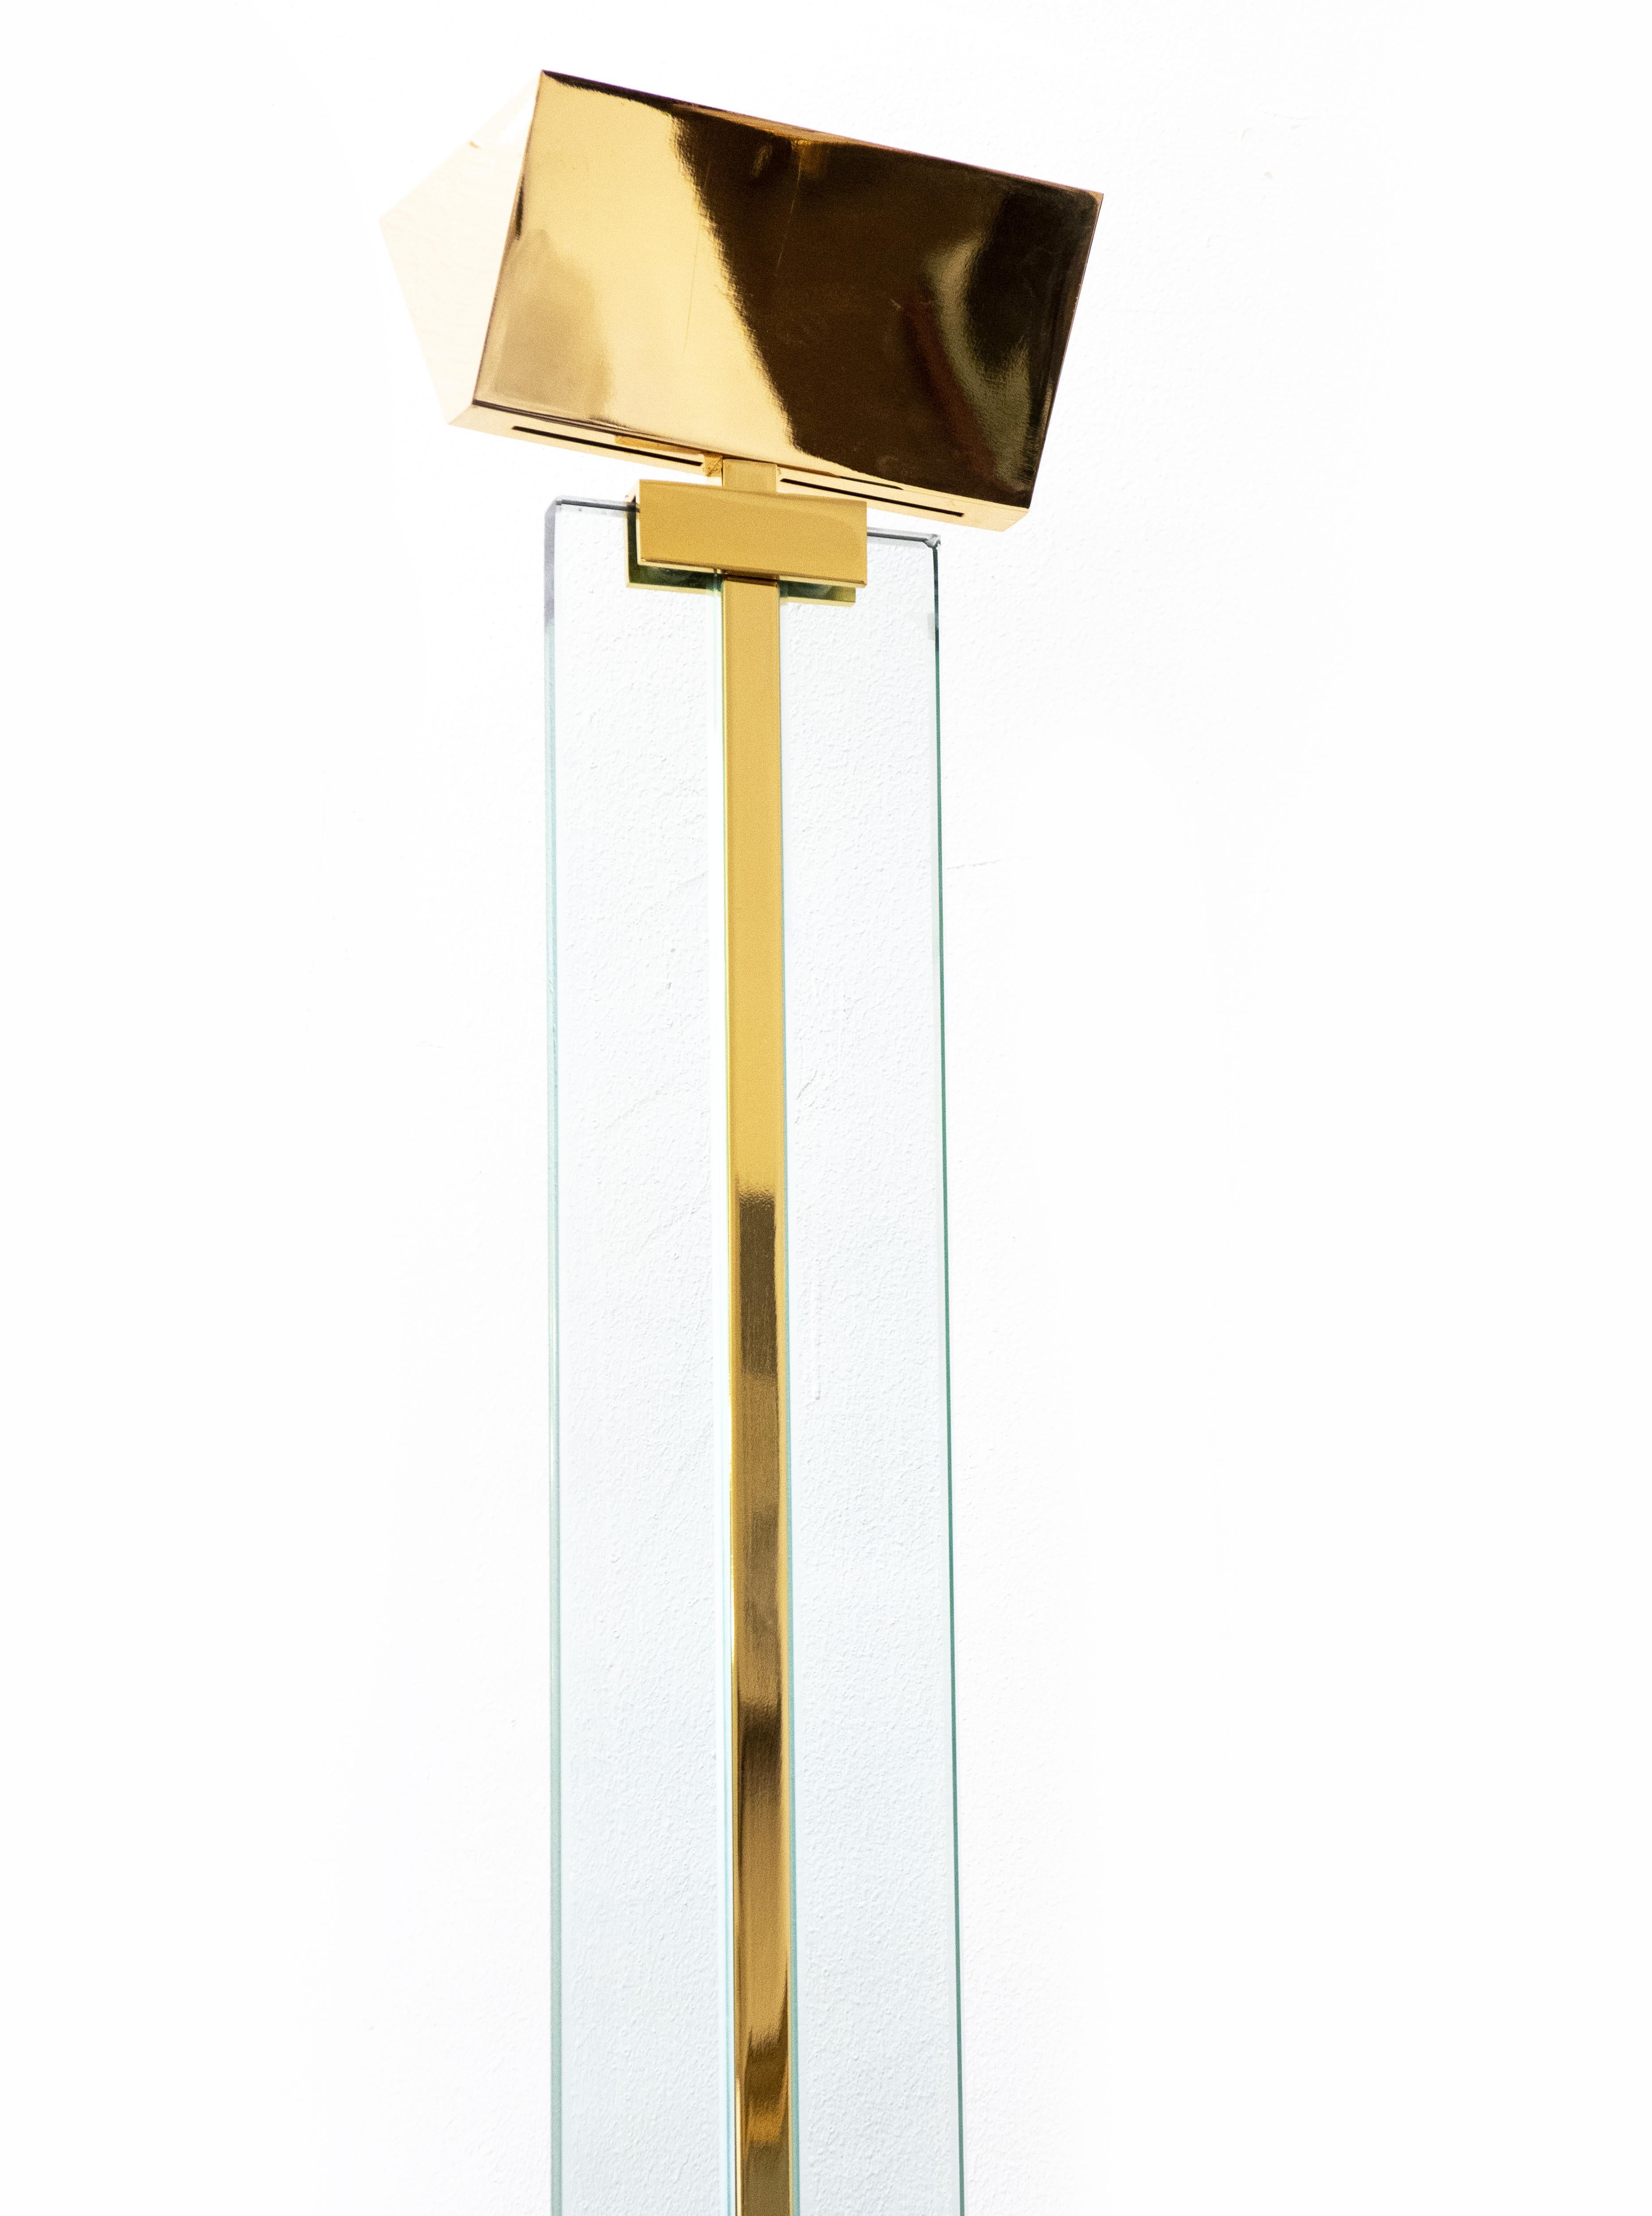 La paire de lampadaires est une œuvre d'art originale de Design/One contemporain réalisée par Gianfranco Frattini (Padua, 1926 - Milan, 2004) dans les années 1970.

Fabriqué en Italie, en laiton et en cristal par Relco Design.

Dimensions : 188